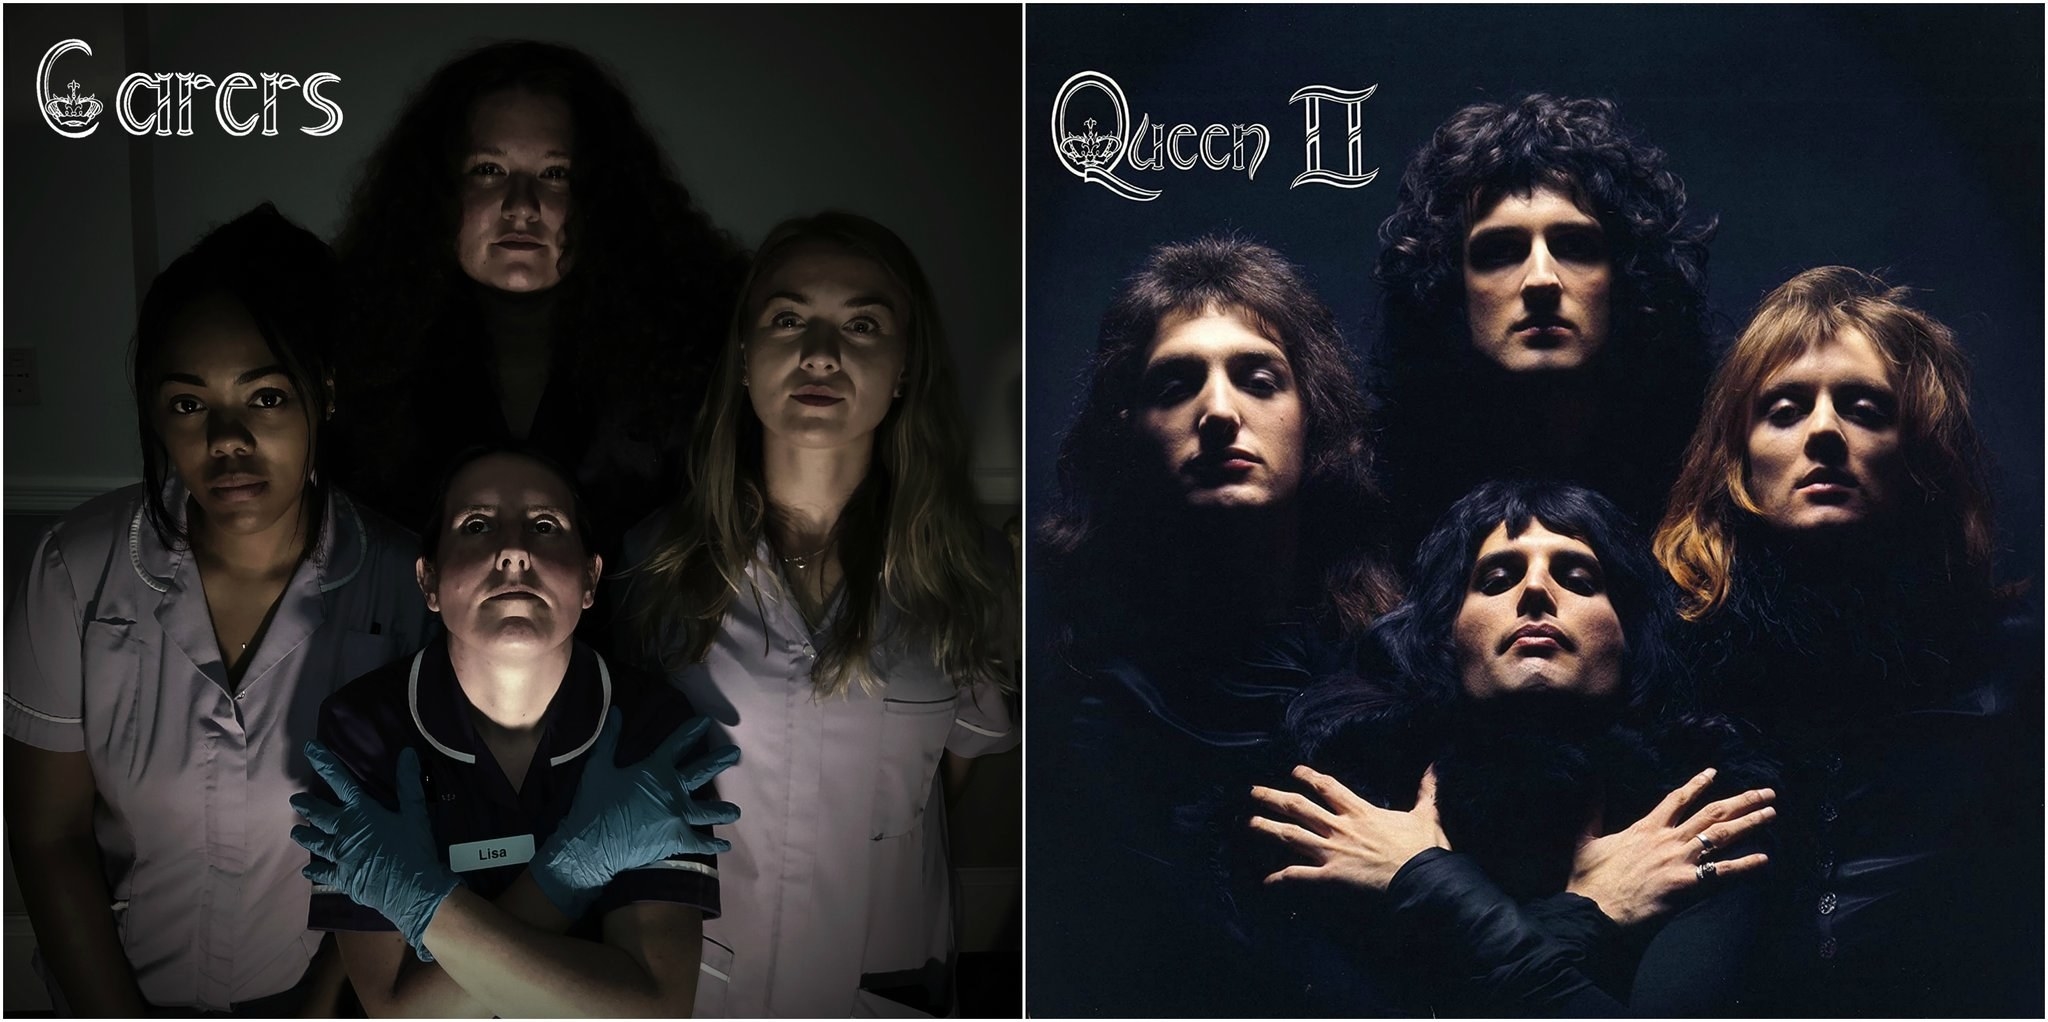 A group of carers recreating Queen&#x27;s Queen II album cover